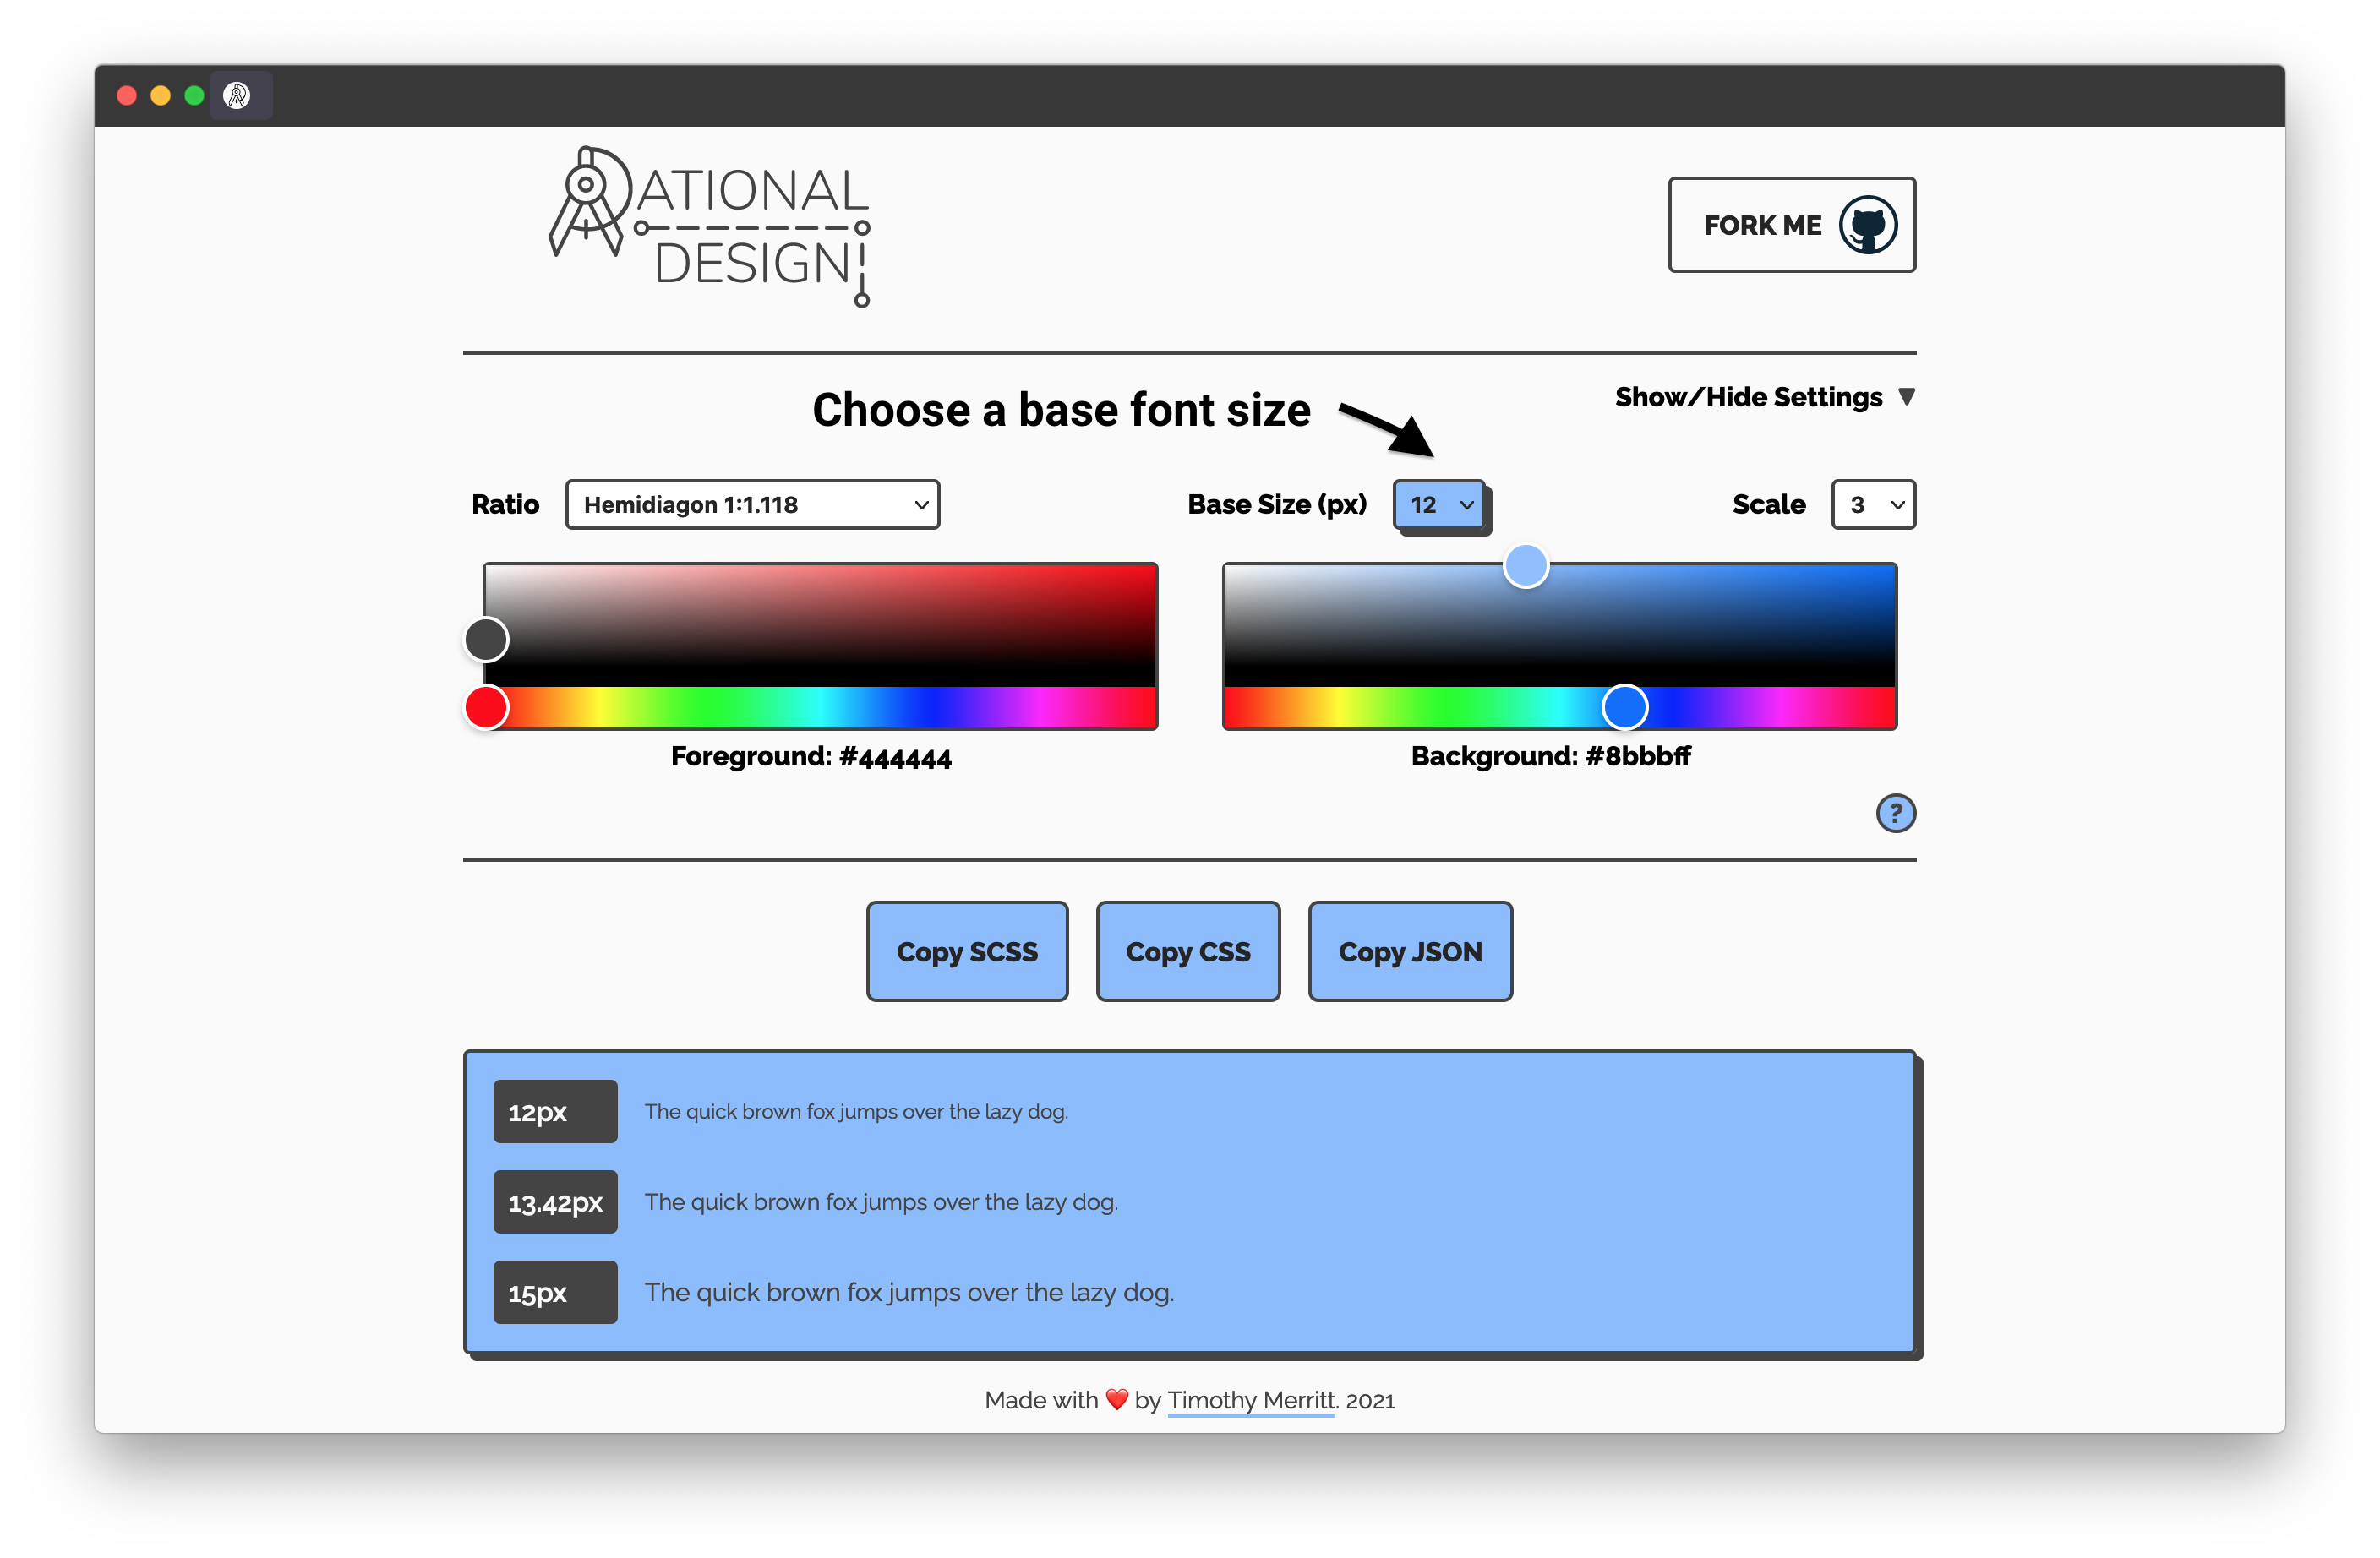 Rational Design - base size